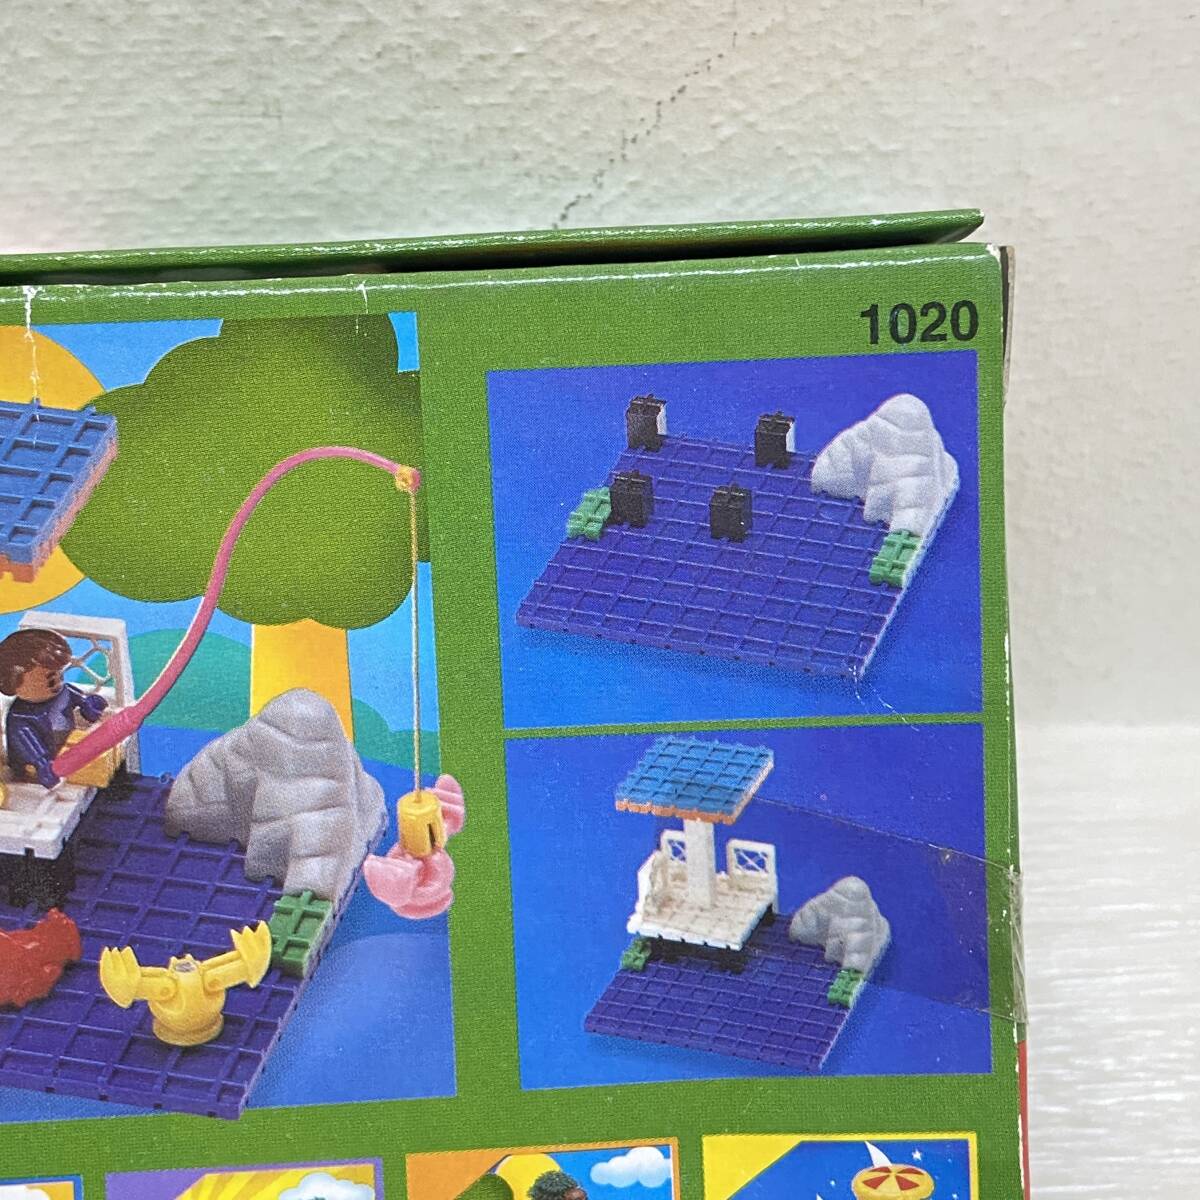 Σ возможно не использовался TEENY WORLD 1020 блок за границей развивающая игрушка красочный игрушка игрушка рыбалка ... миниатюра долгосрочное хранение ΣN52423